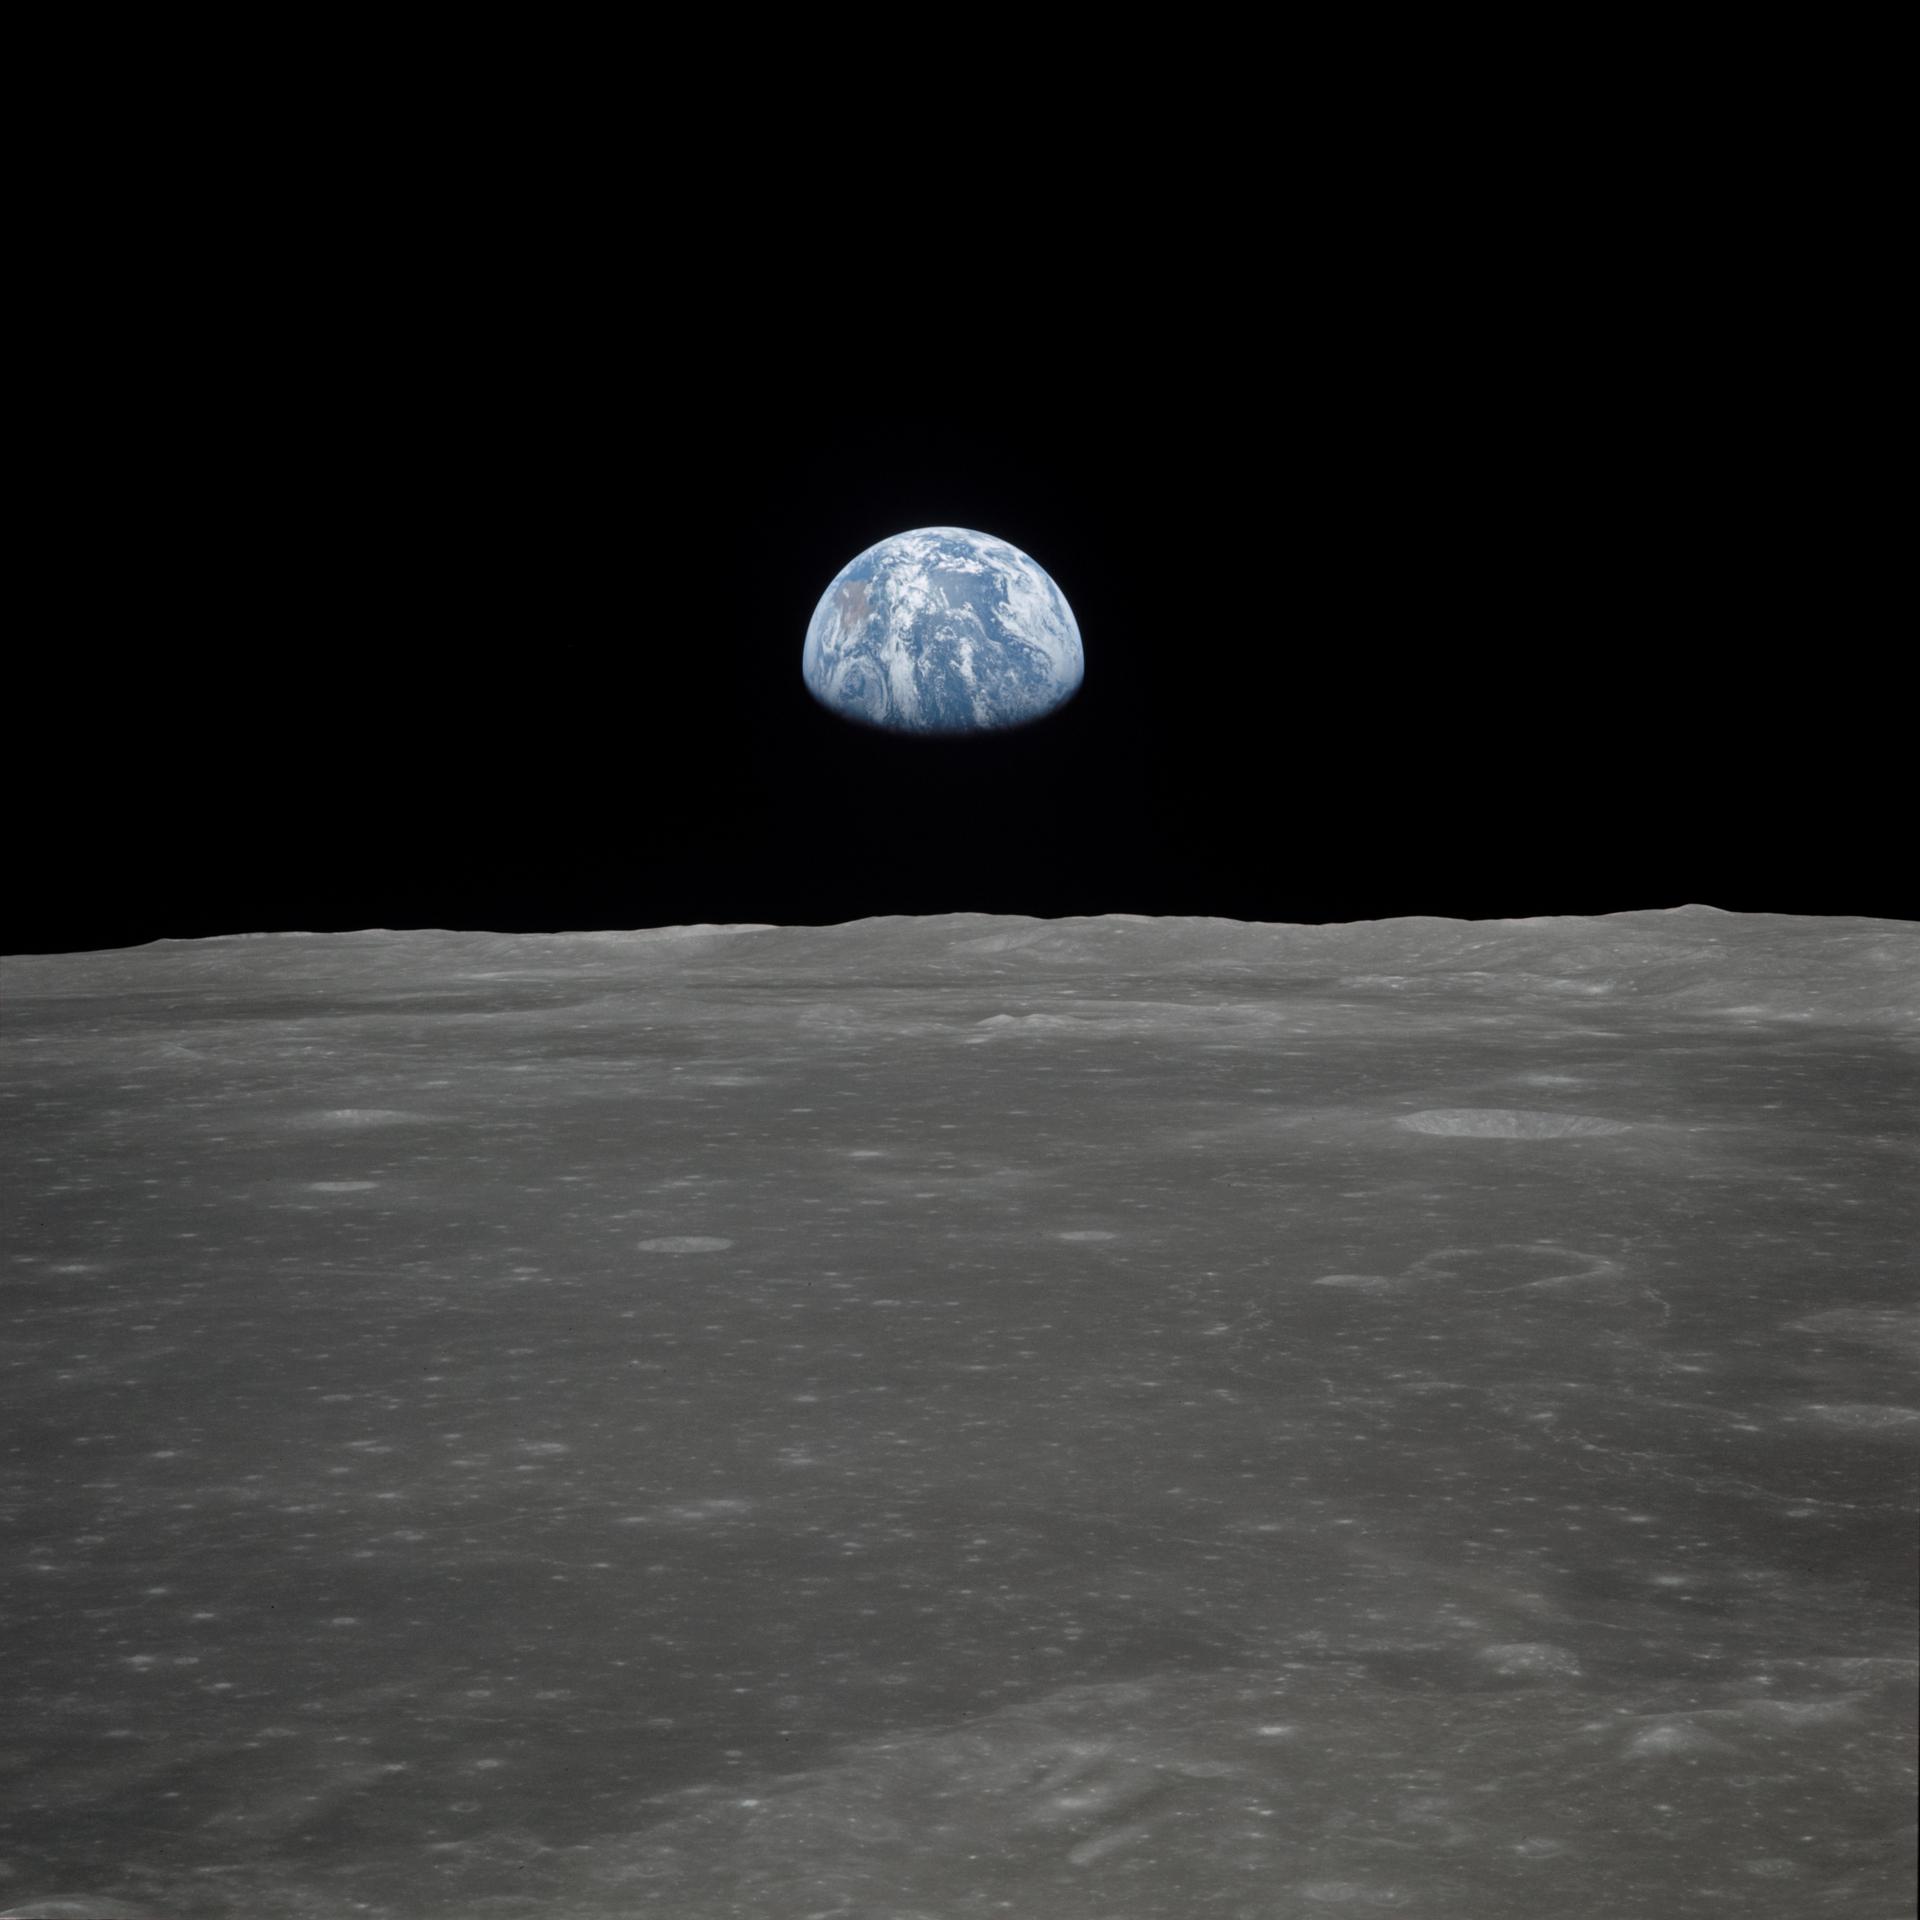 Earth seen from the Apollo 11 lunar module, descending to the Moon. Credit: CSIRO